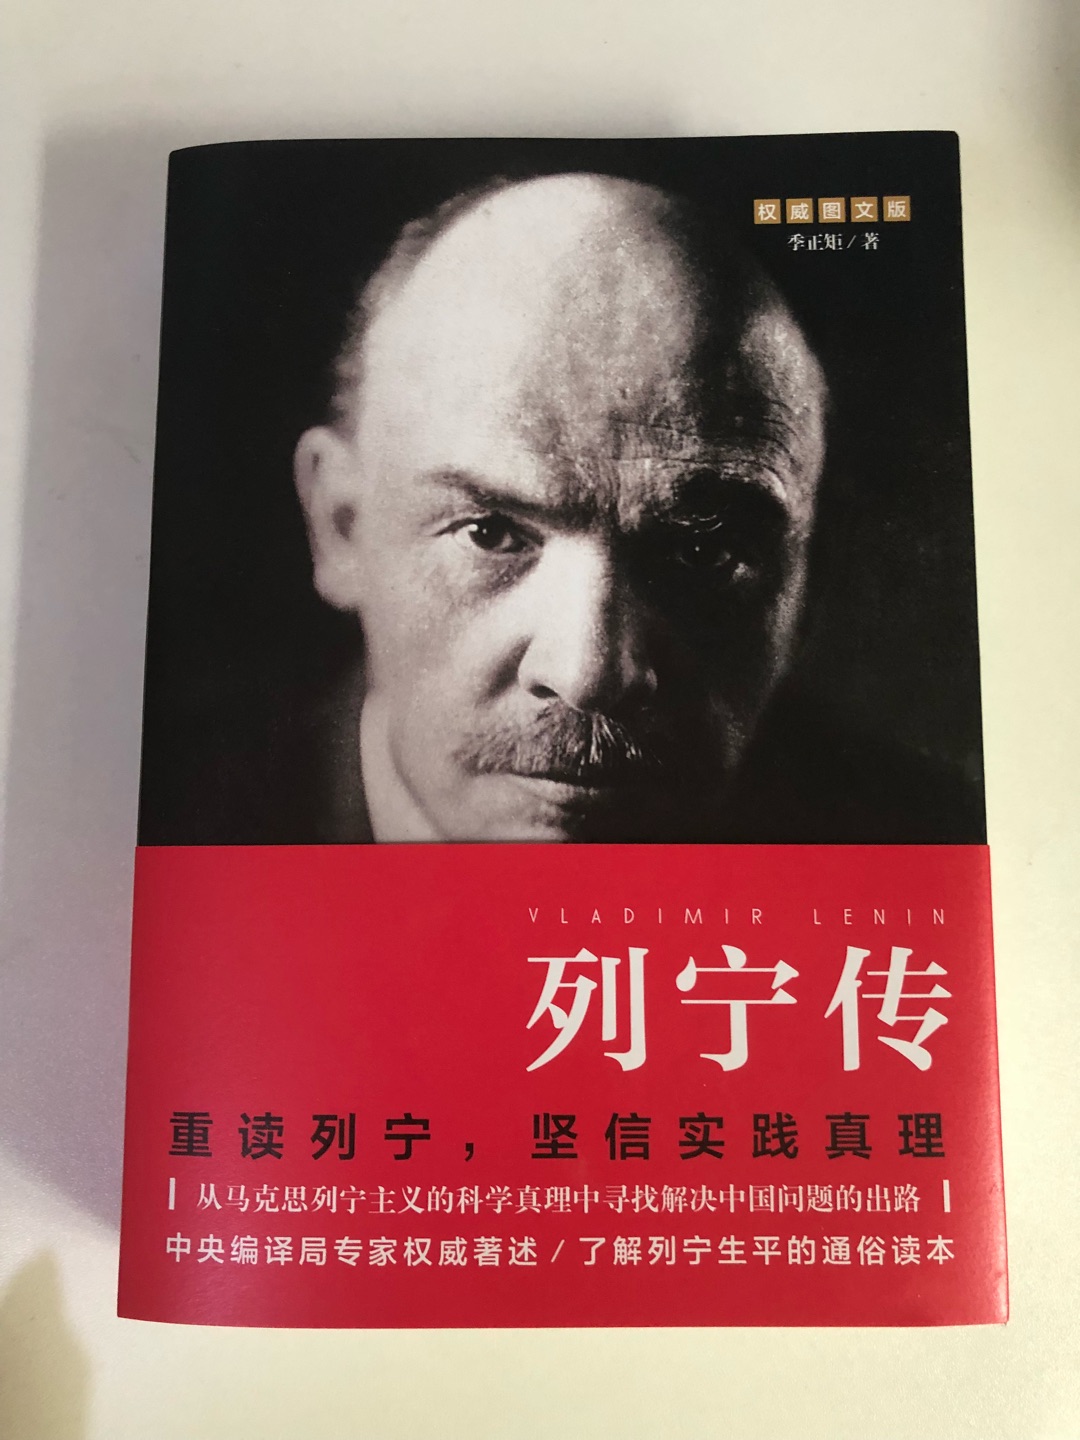 收到了 好厚的一本书 500多页 正版无异味 ，学世界历史和马克思主意必须要读列宁传 重读列宁 坚信实践真理 哈哈哈